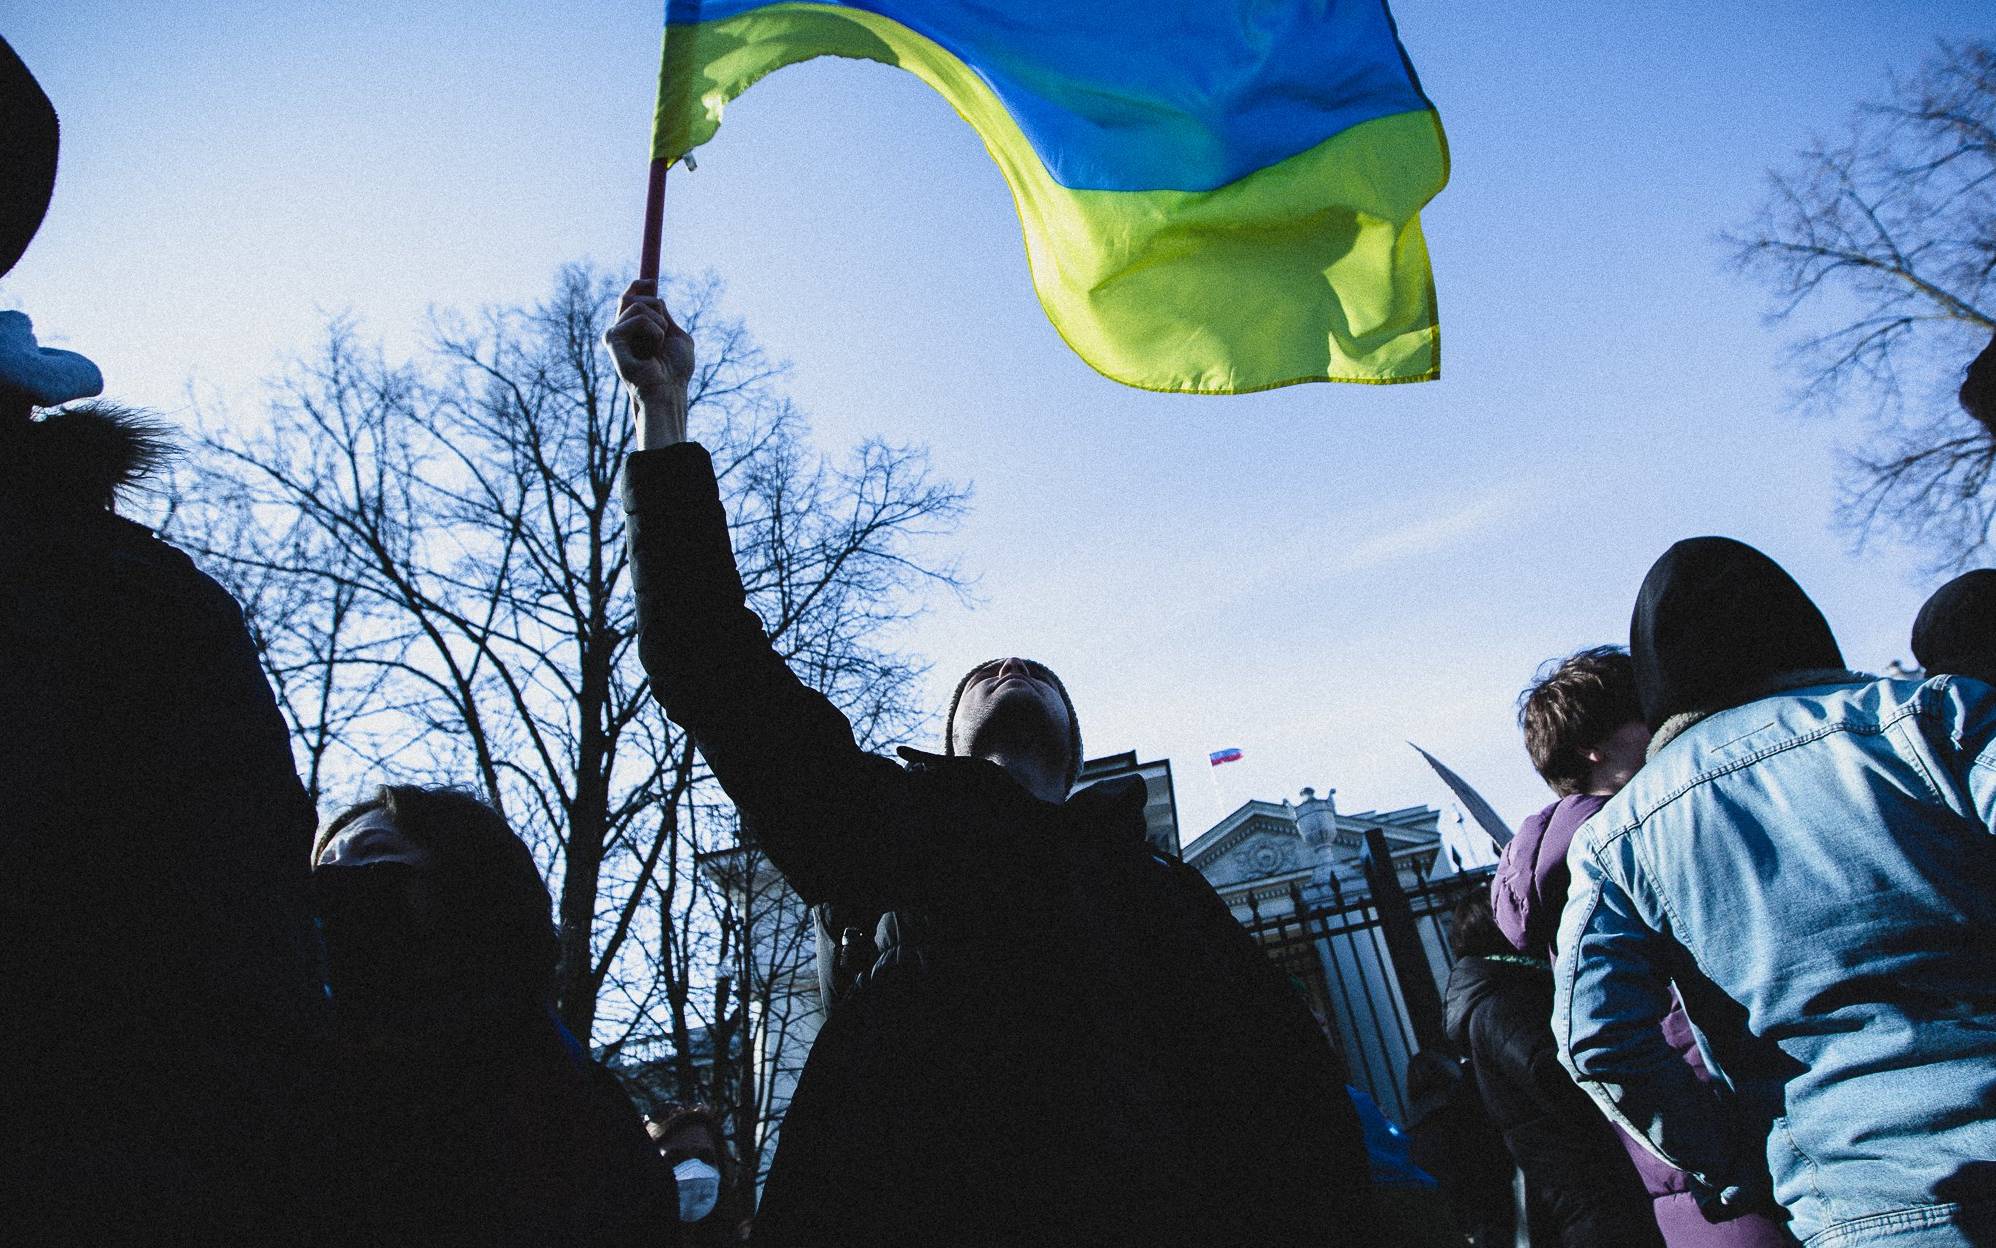 Grafika do artykułu "Niektórzy znajomi dostali już broń". "Staramy się nie panikować" - relacje z Ukrainy